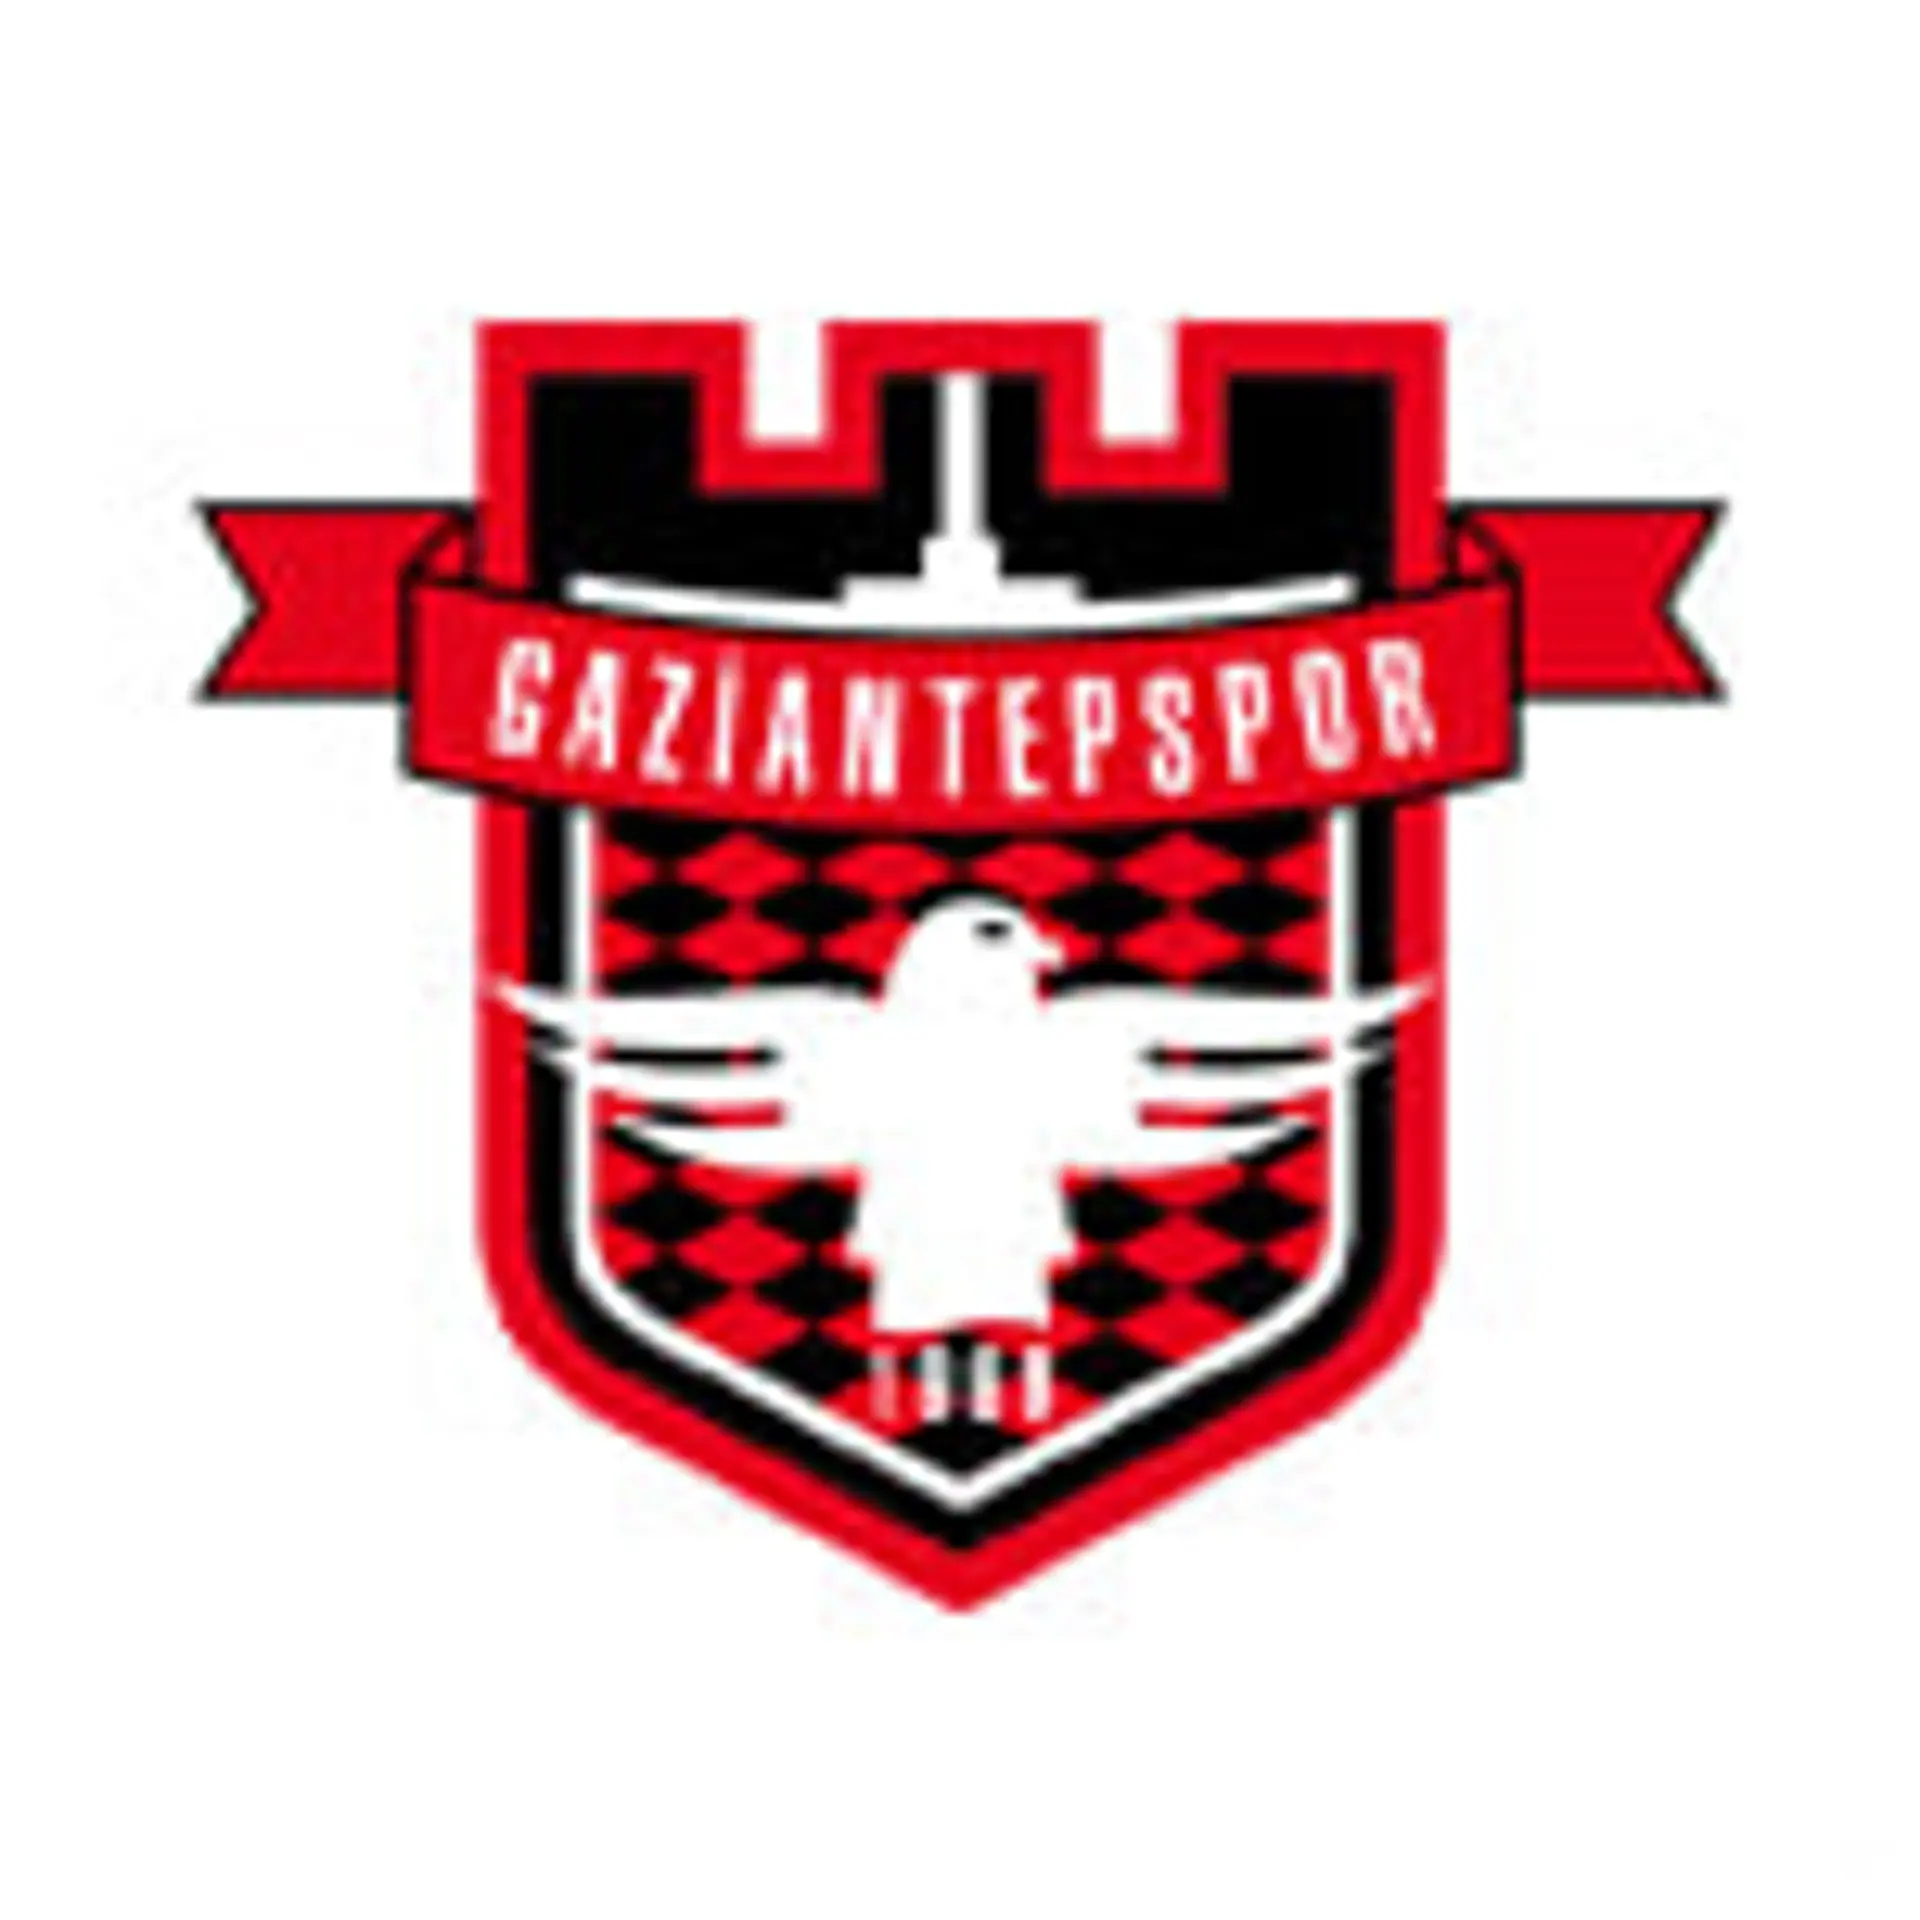 Gaziantepspor News 